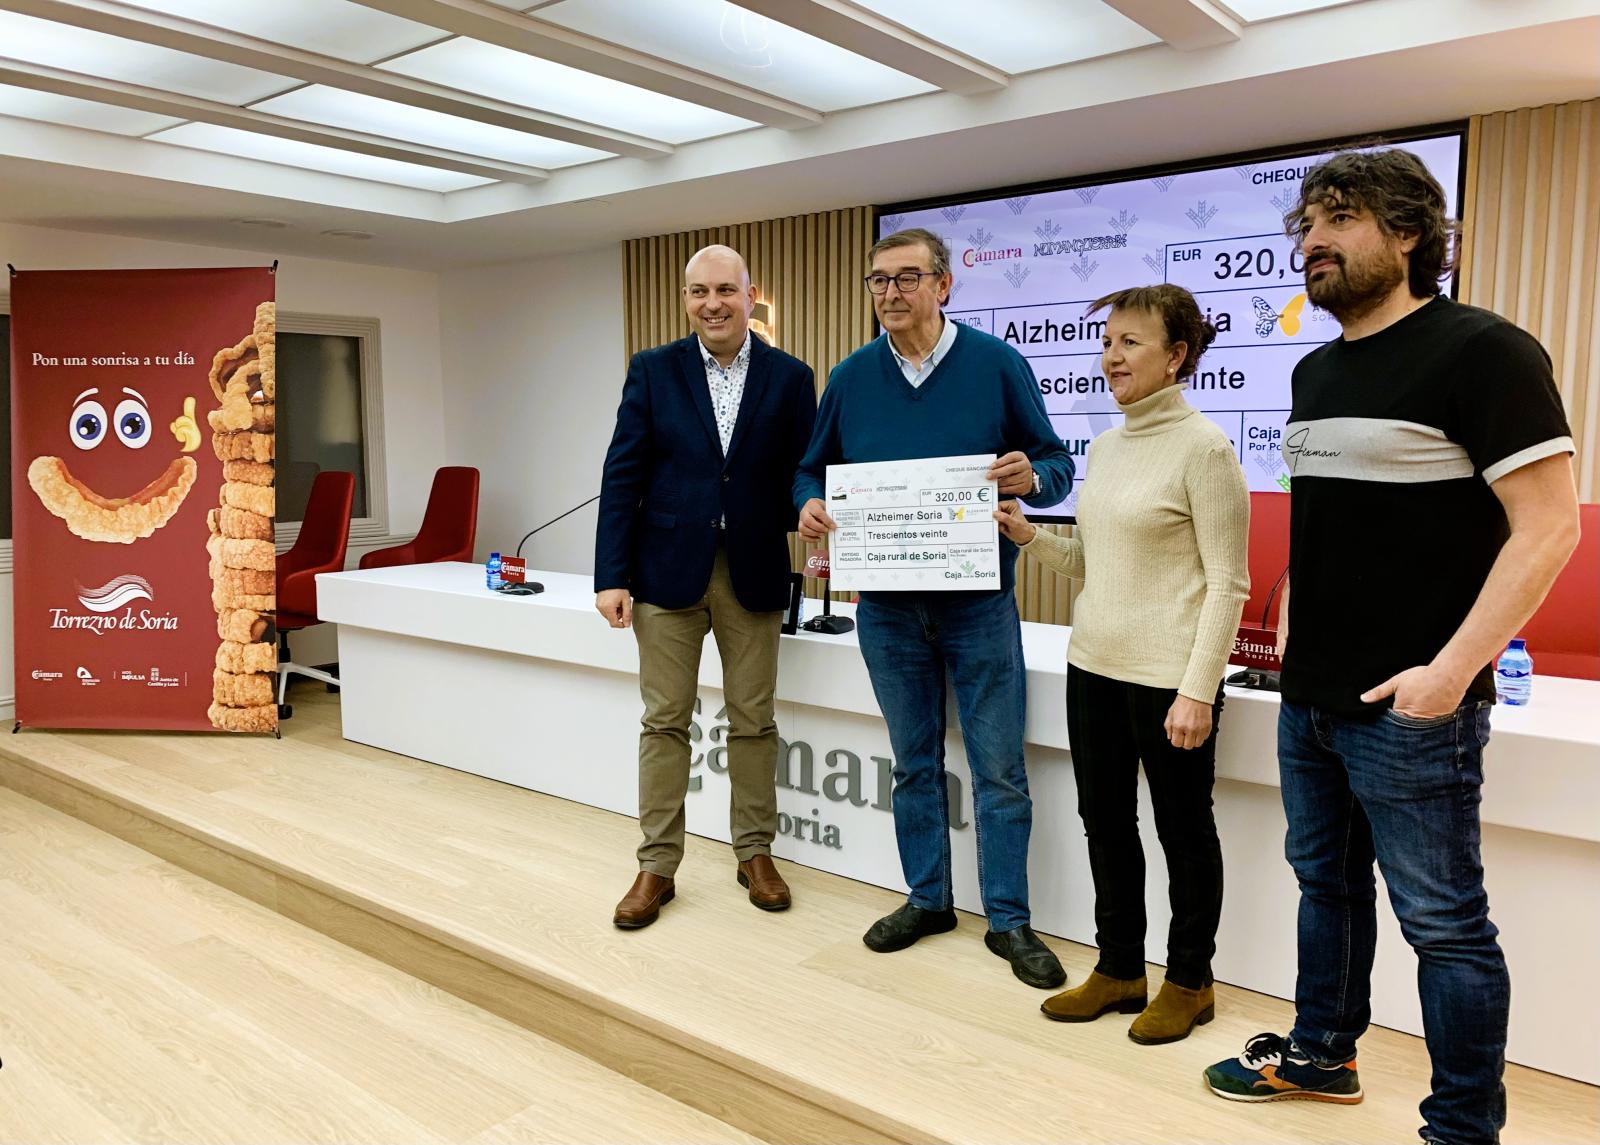 La Marca de Garantía Torrezno de Soria entrega los 320 euros de la recaudación del Delantal Solidario a Alzheimer Soria